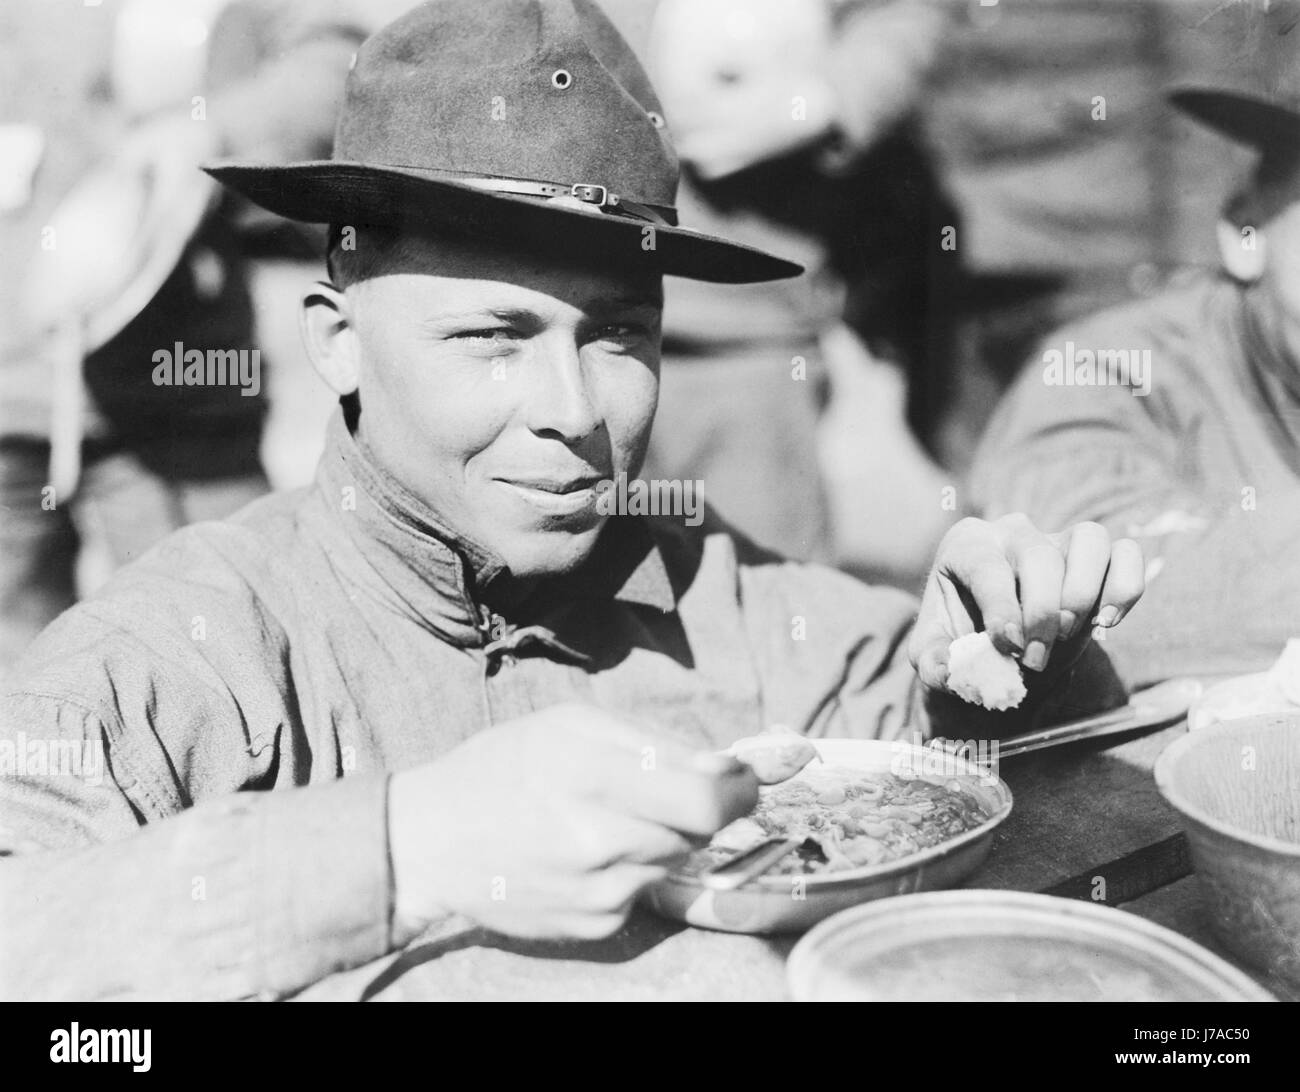 Stati Uniti Soldato dell'esercito a mangiare durante la Seconda Guerra Mondiale. Foto Stock